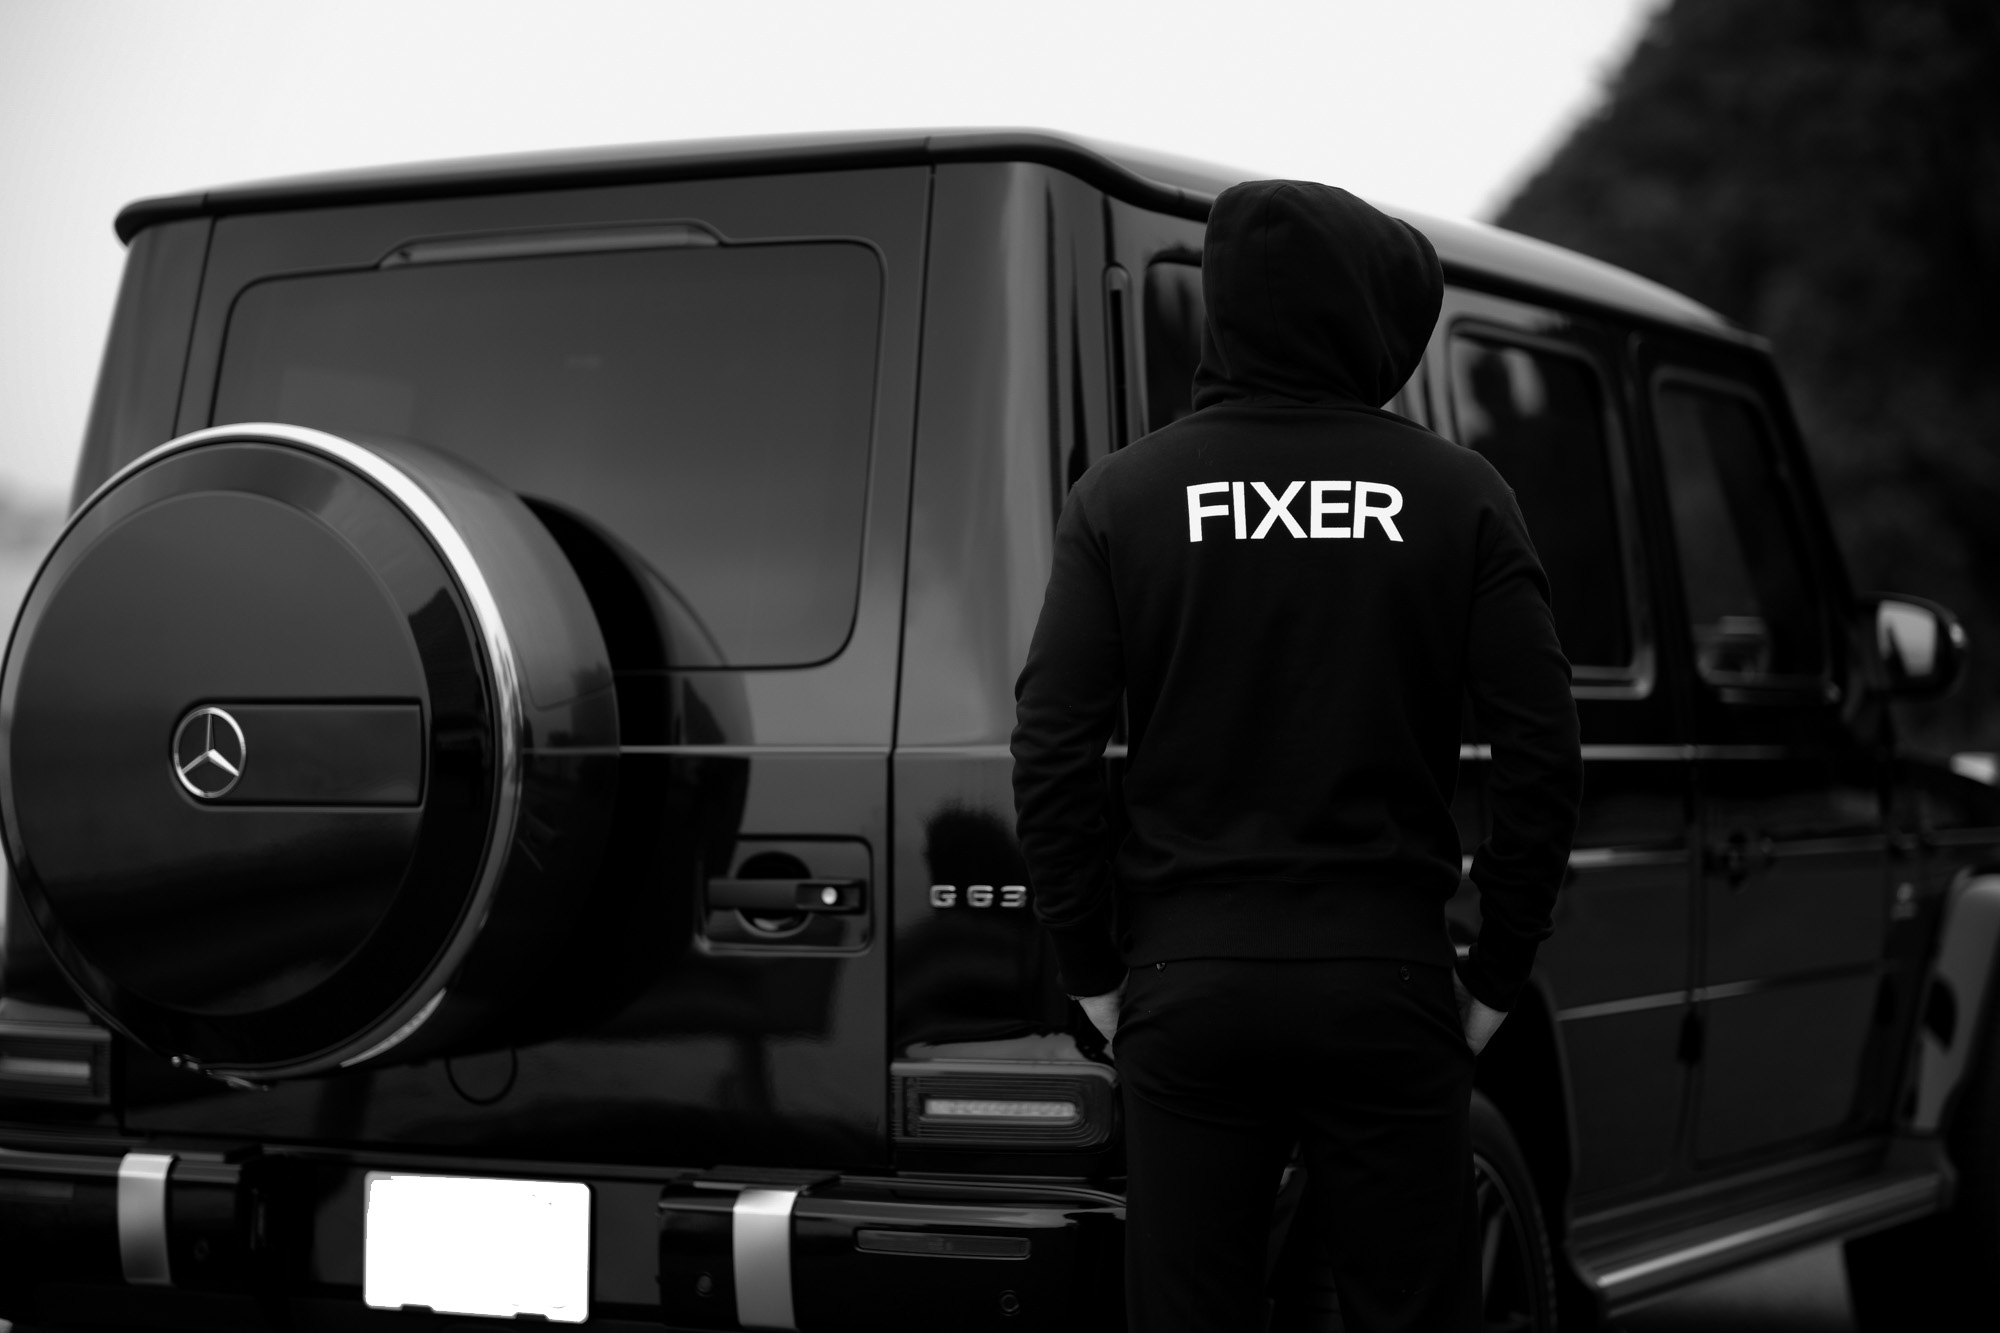 FIXER (フィクサー) FPK-02(エフピーケー02) Sweat Hoodie スウェットフーディー BLACK (ブラック) 2020 愛知 名古屋 altoediritto アルトエデリット パーカー プリントロゴ ロゴプリント 肉厚 裏サーマル